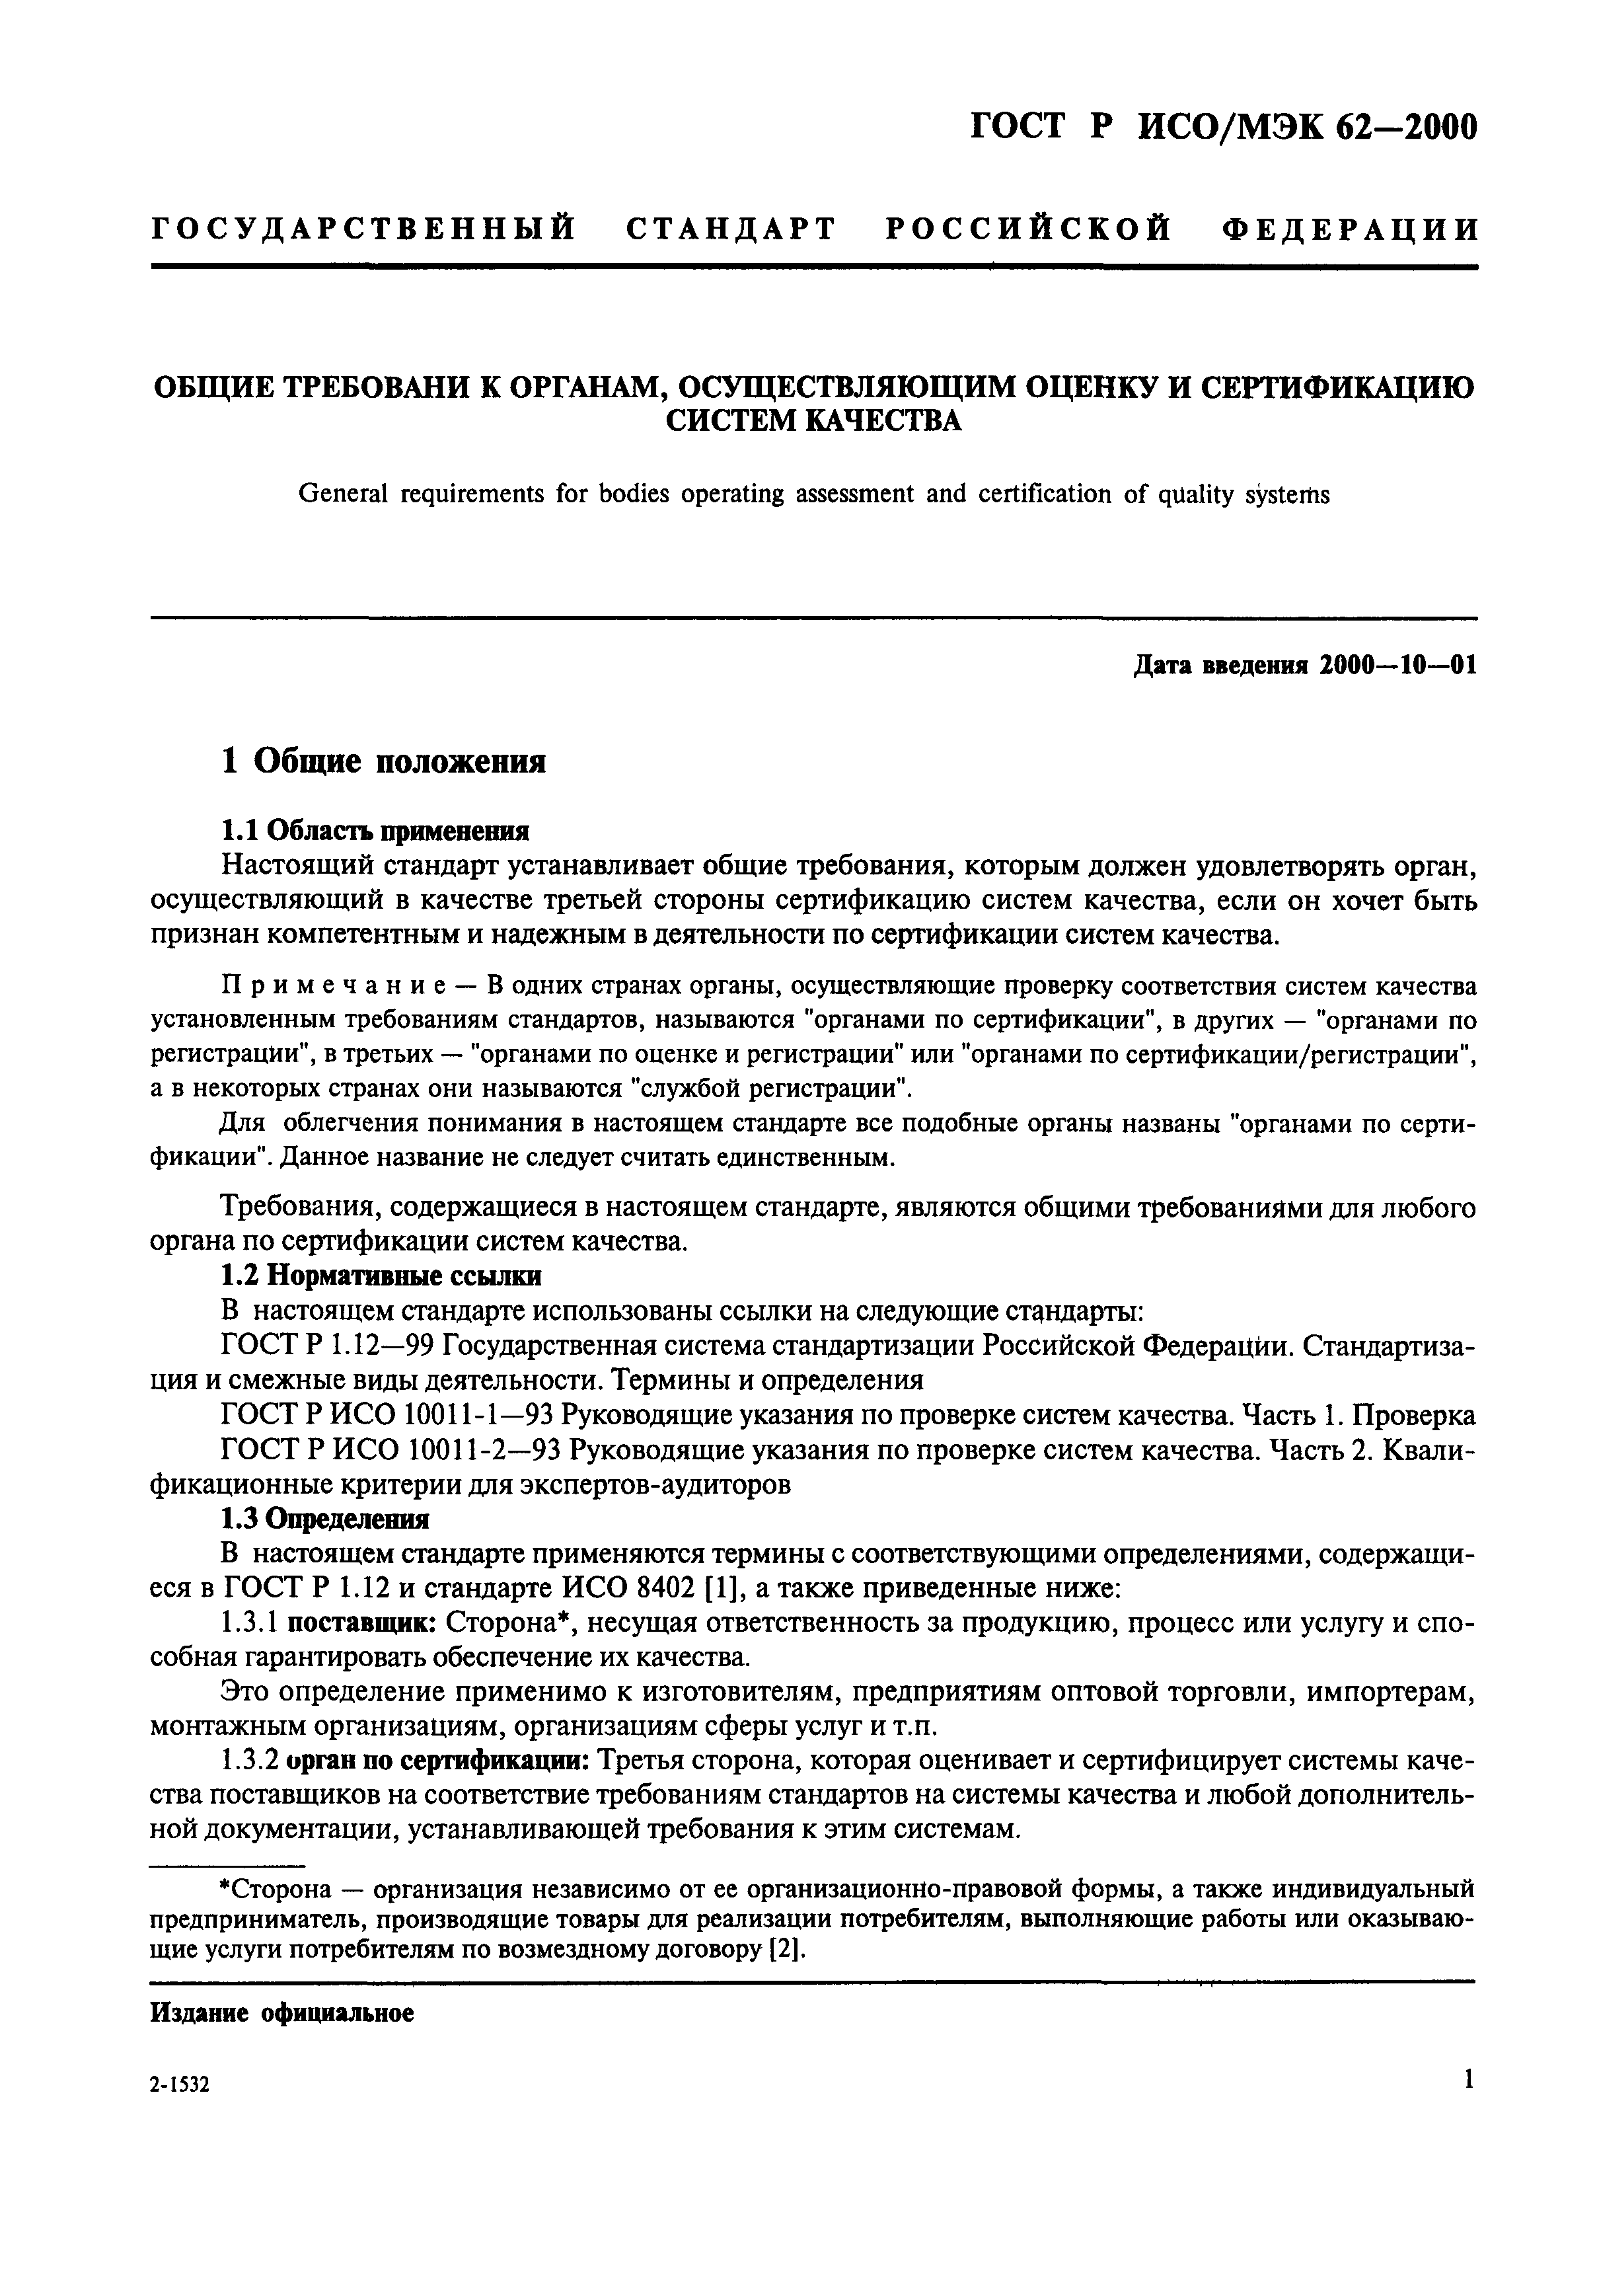 ГОСТ Р ИСО/МЭК 62-2000